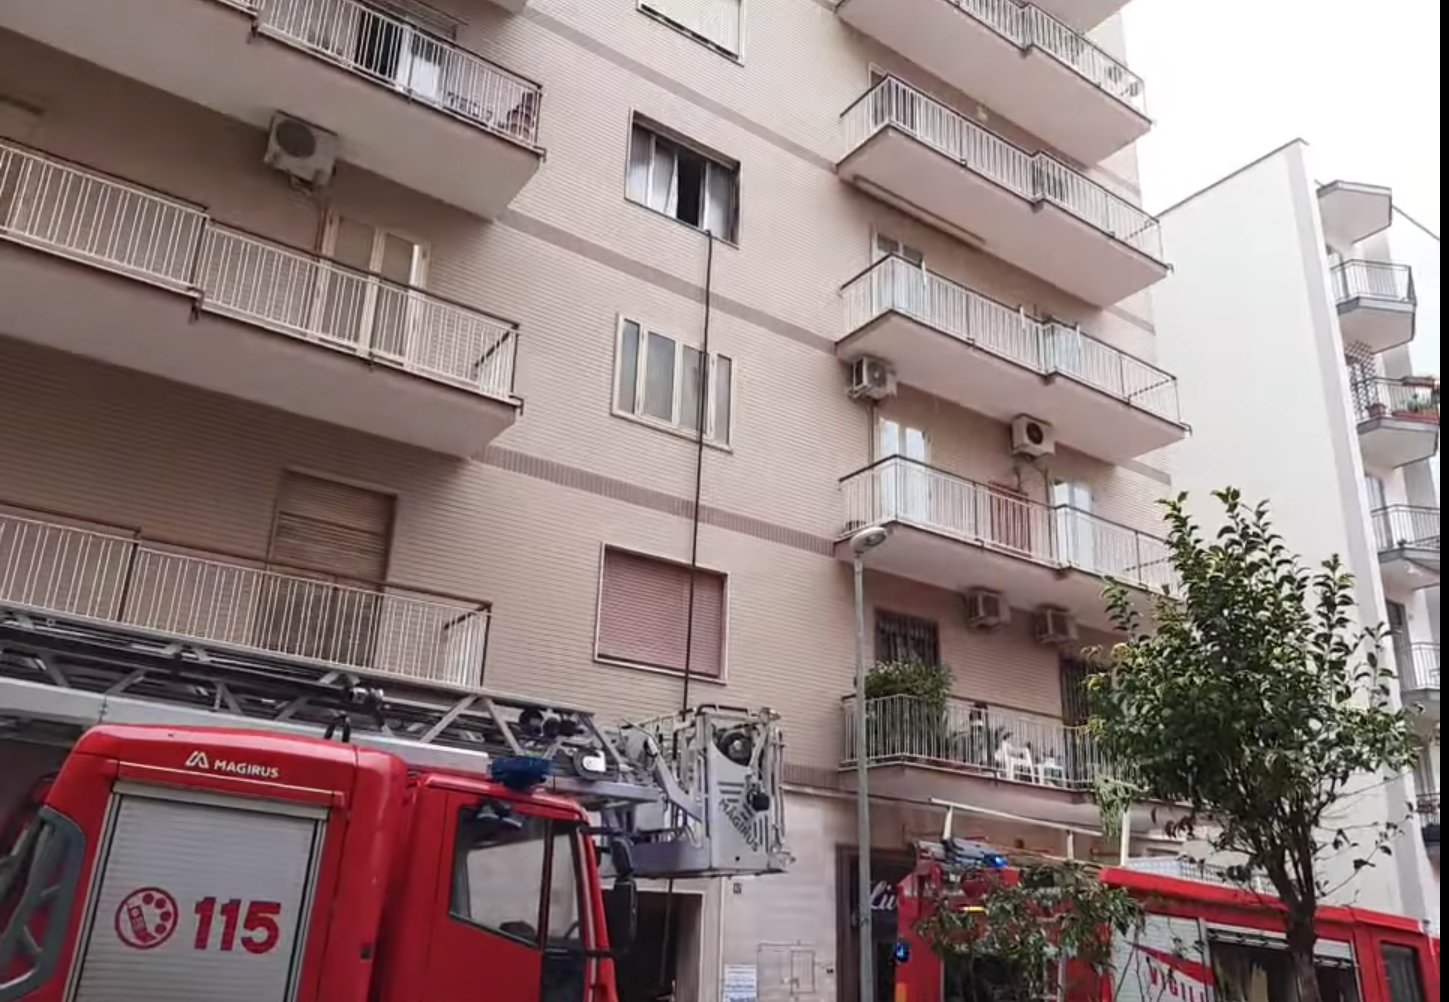 Torre Annunziata, incendio in un appartamento: bimbo di un anno e famiglia salvati dai carabinieri